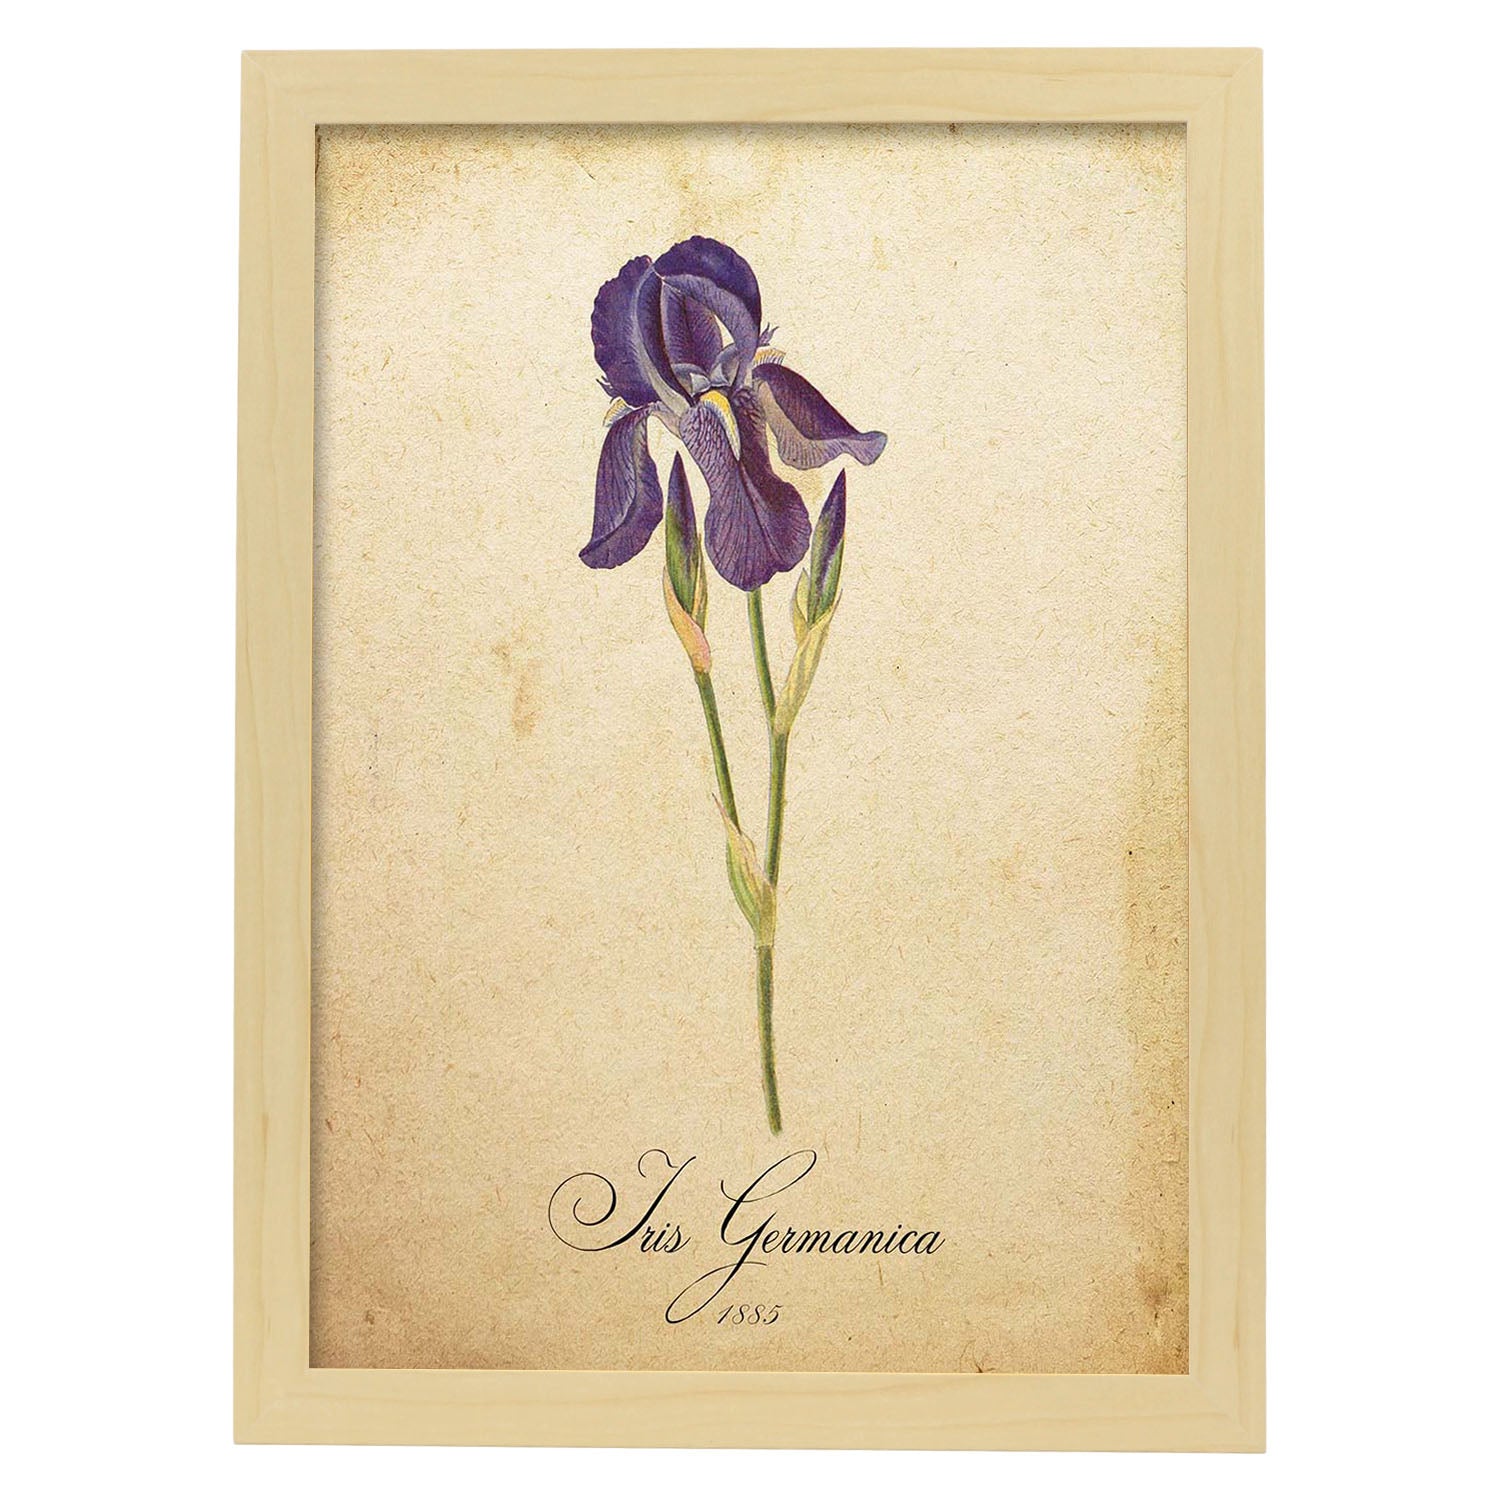 Poster de flores vintage. Lámina Iris germanica con diseño vintage.-Artwork-Nacnic-A3-Marco Madera clara-Nacnic Estudio SL